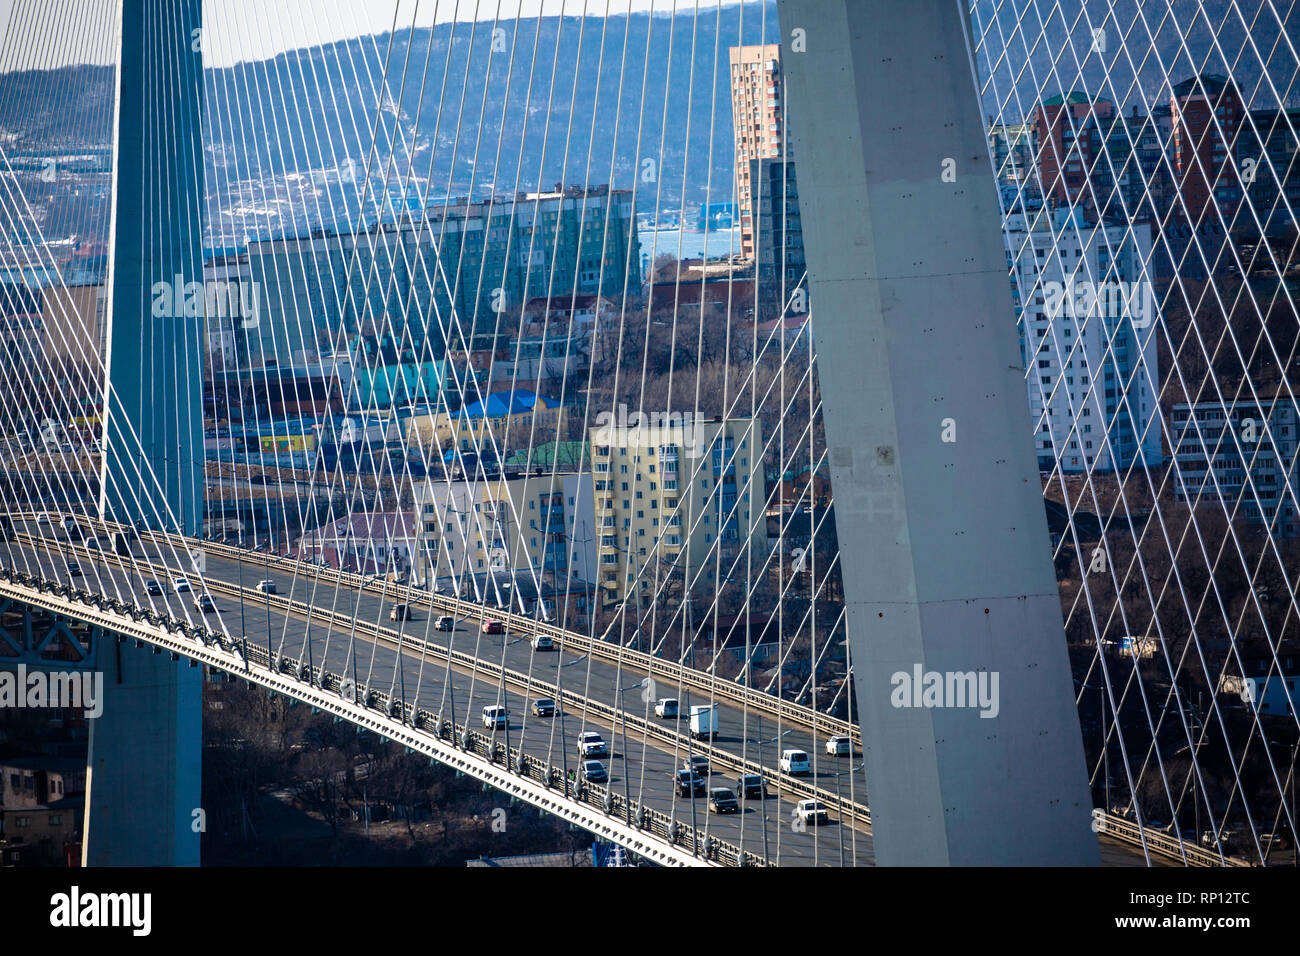 Les lignes épurées et la symétrie de la méga structure qui est le pont de Zolotoy, Vladivostok, Russie Banque D'Images